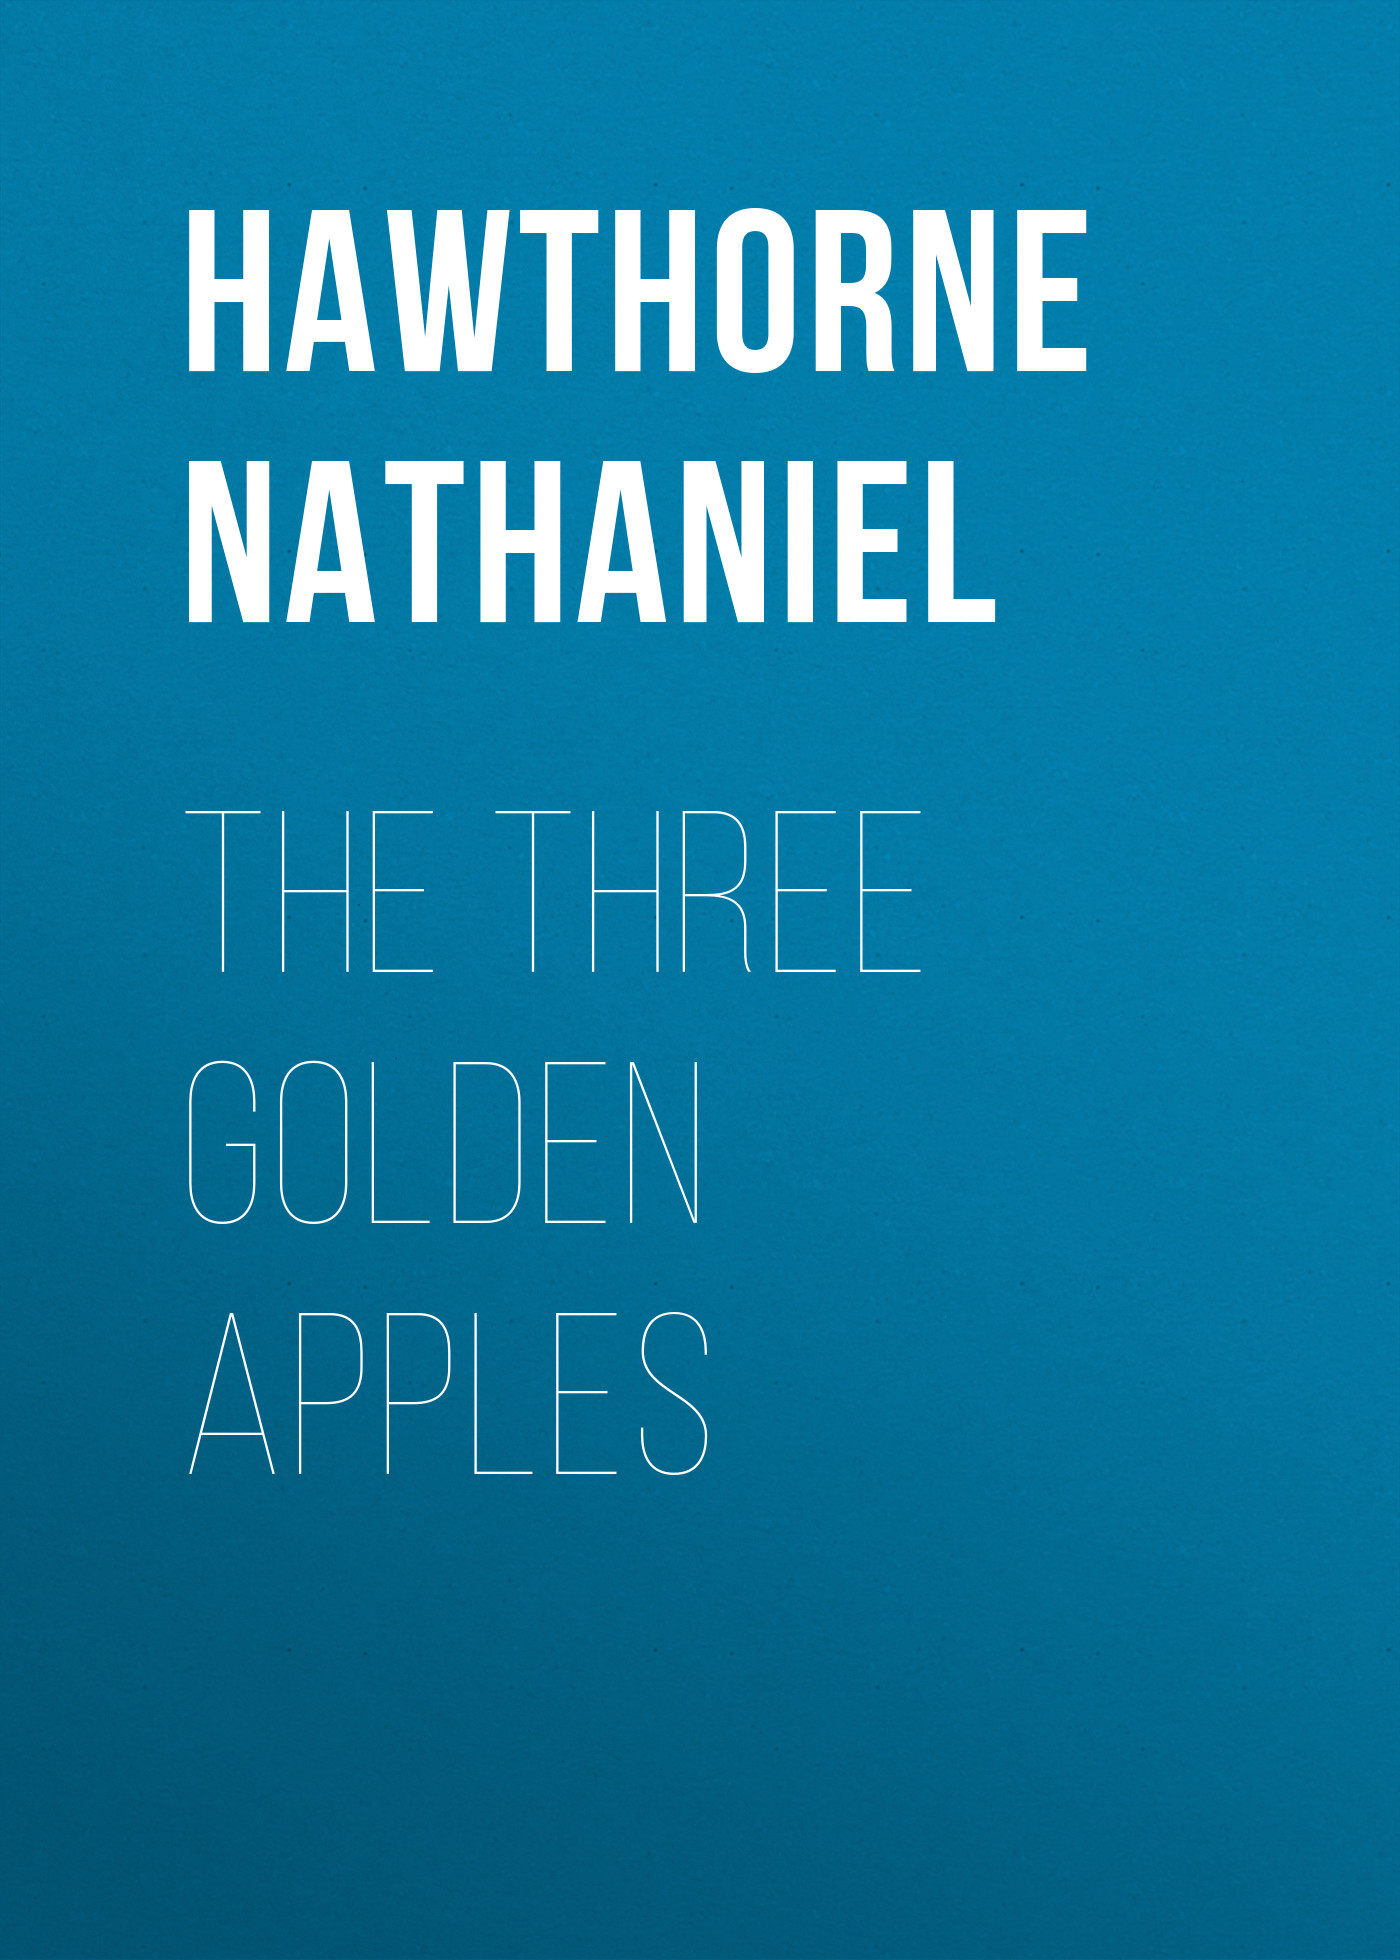 Книга The Three Golden Apples из серии , созданная Nathaniel Hawthorne, может относится к жанру Литература 19 века, Мифы. Легенды. Эпос, Зарубежная старинная литература, Зарубежная классика, Зарубежные детские книги. Стоимость электронной книги The Three Golden Apples с идентификатором 25561468 составляет 0 руб.